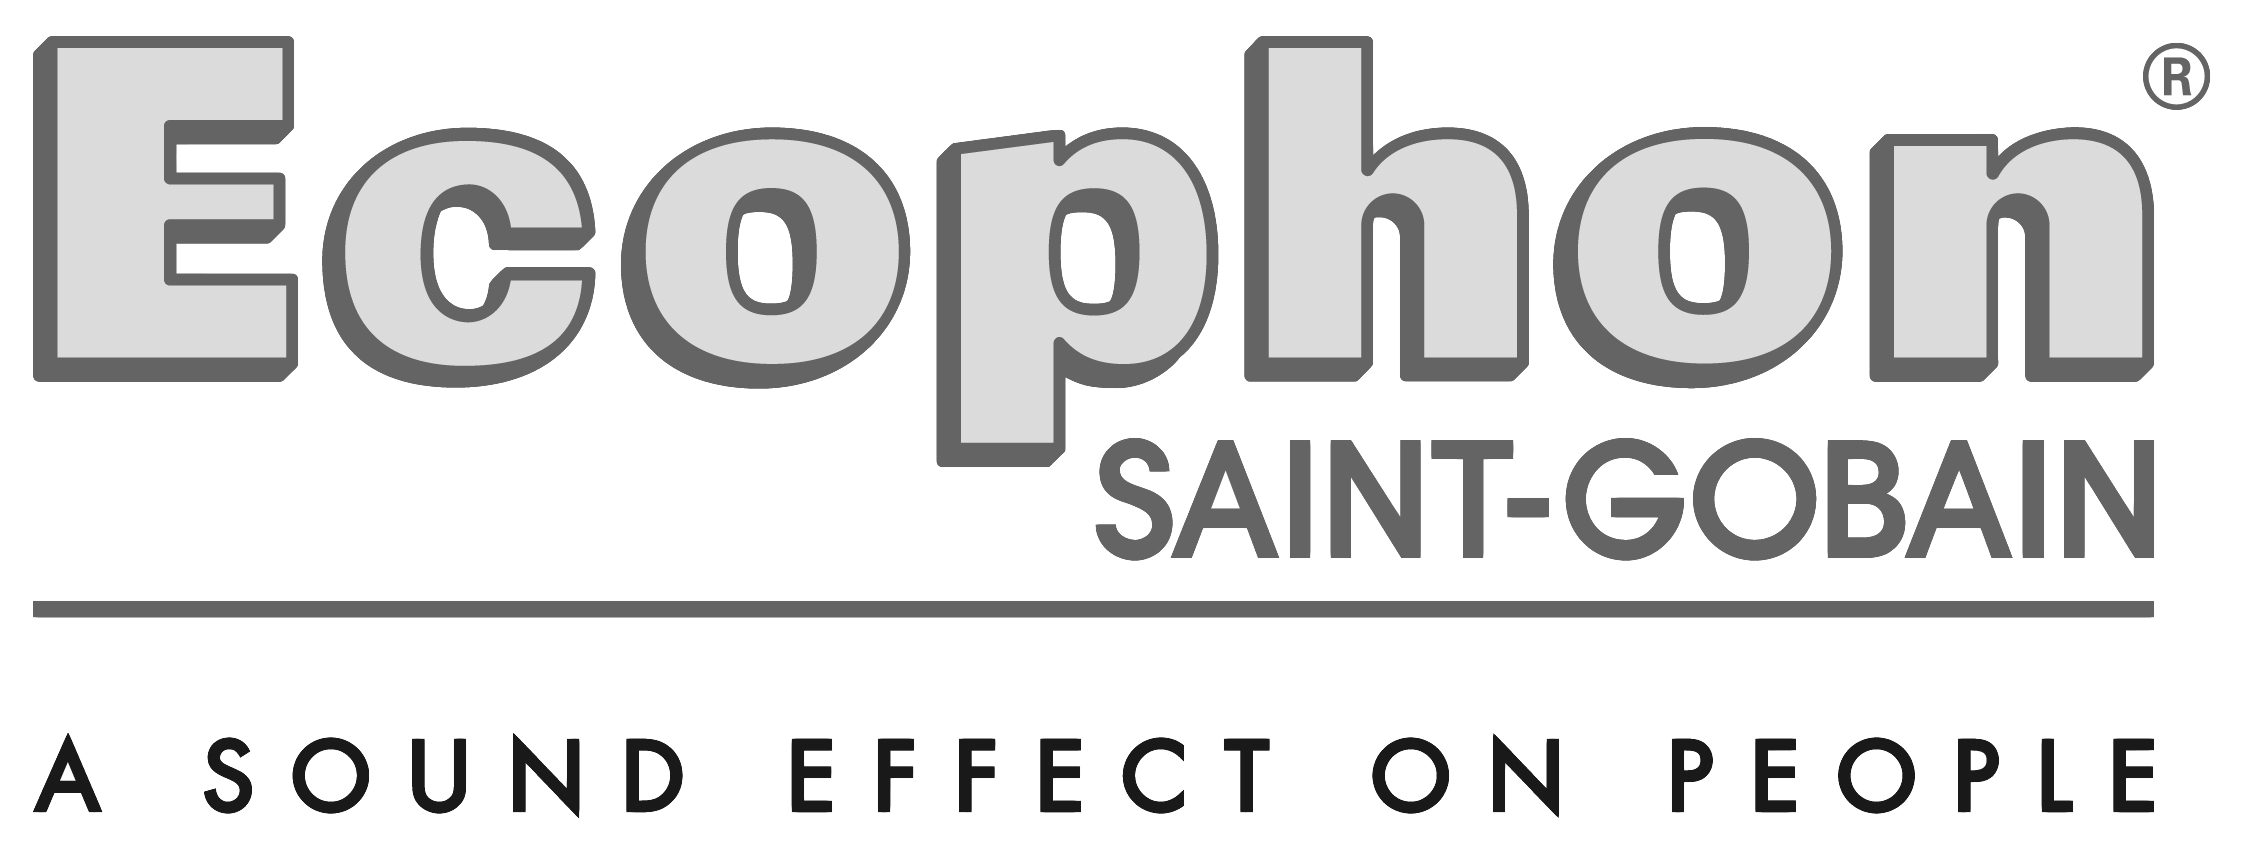 ECOPHON logo bw.png